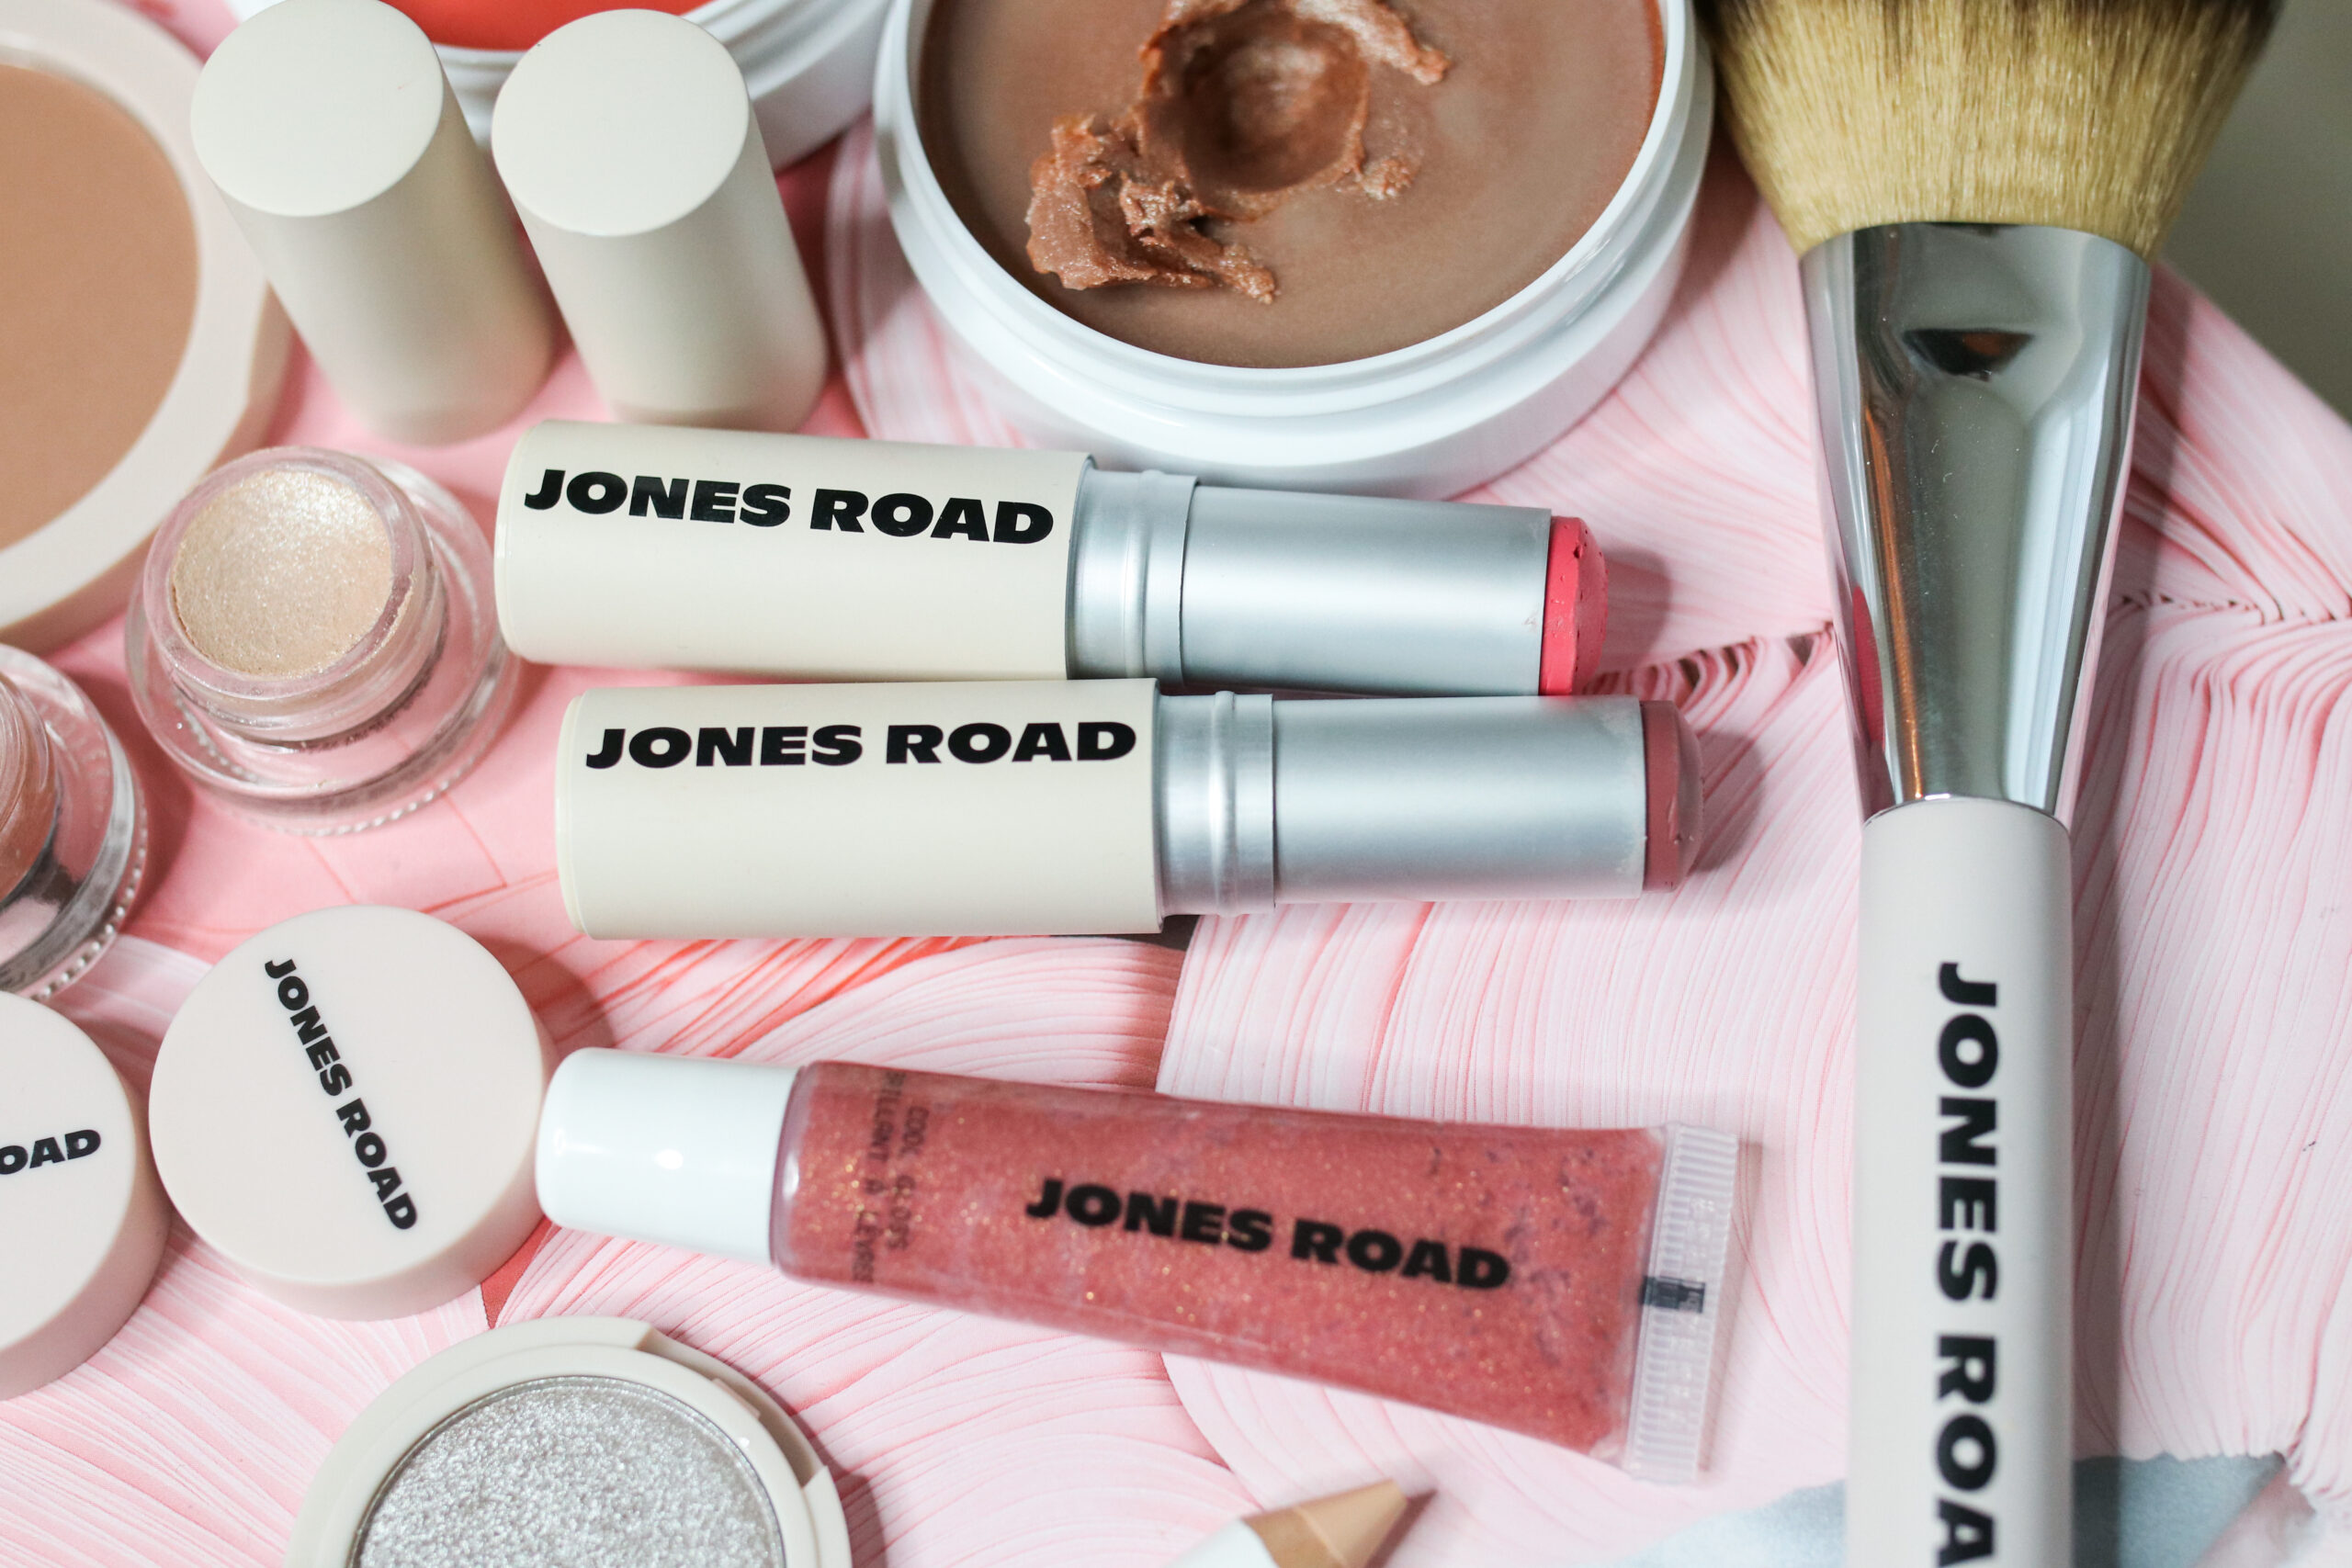 Jones Road lip products